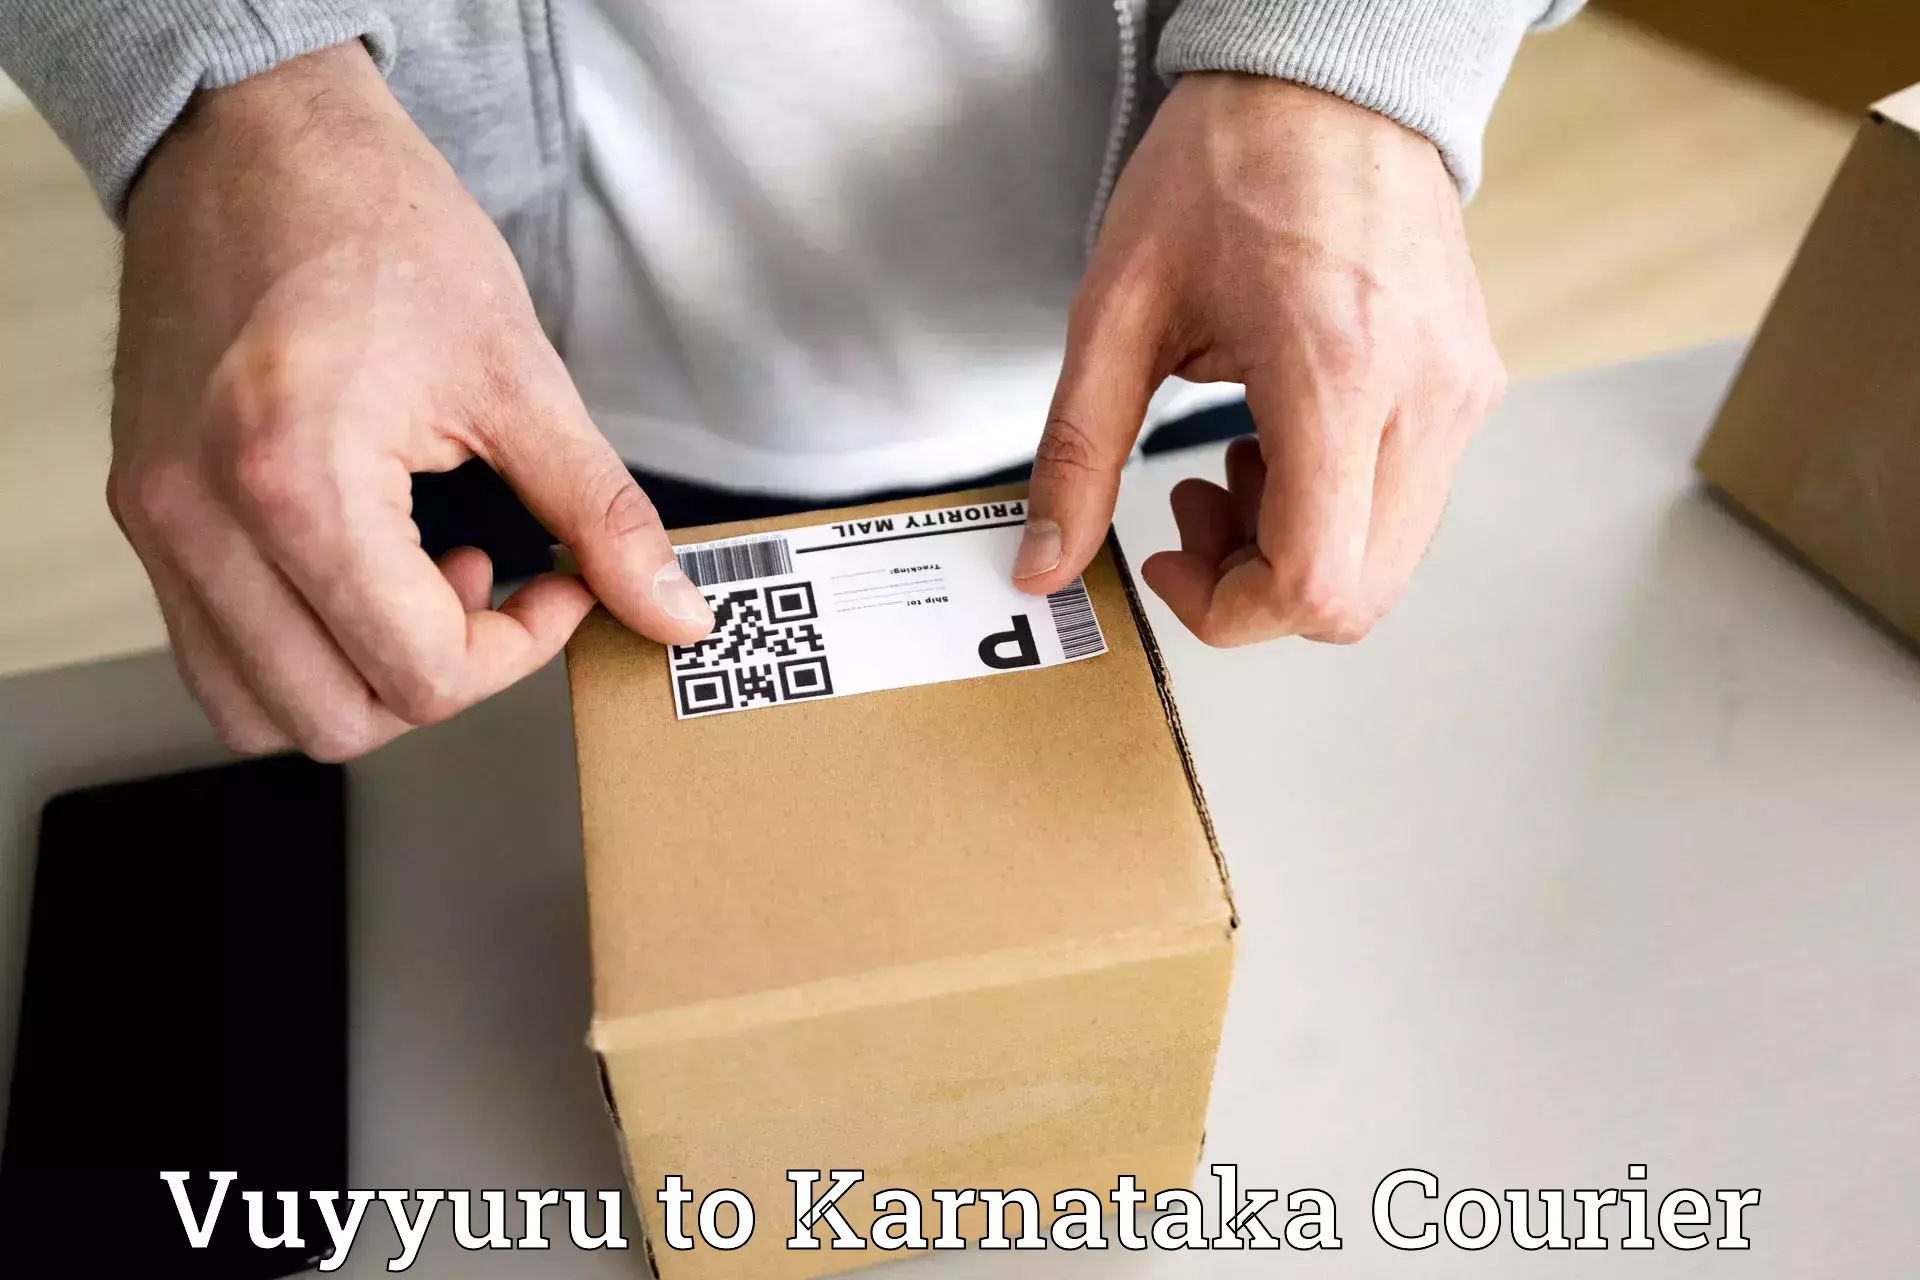 On-demand courier Vuyyuru to Tikota